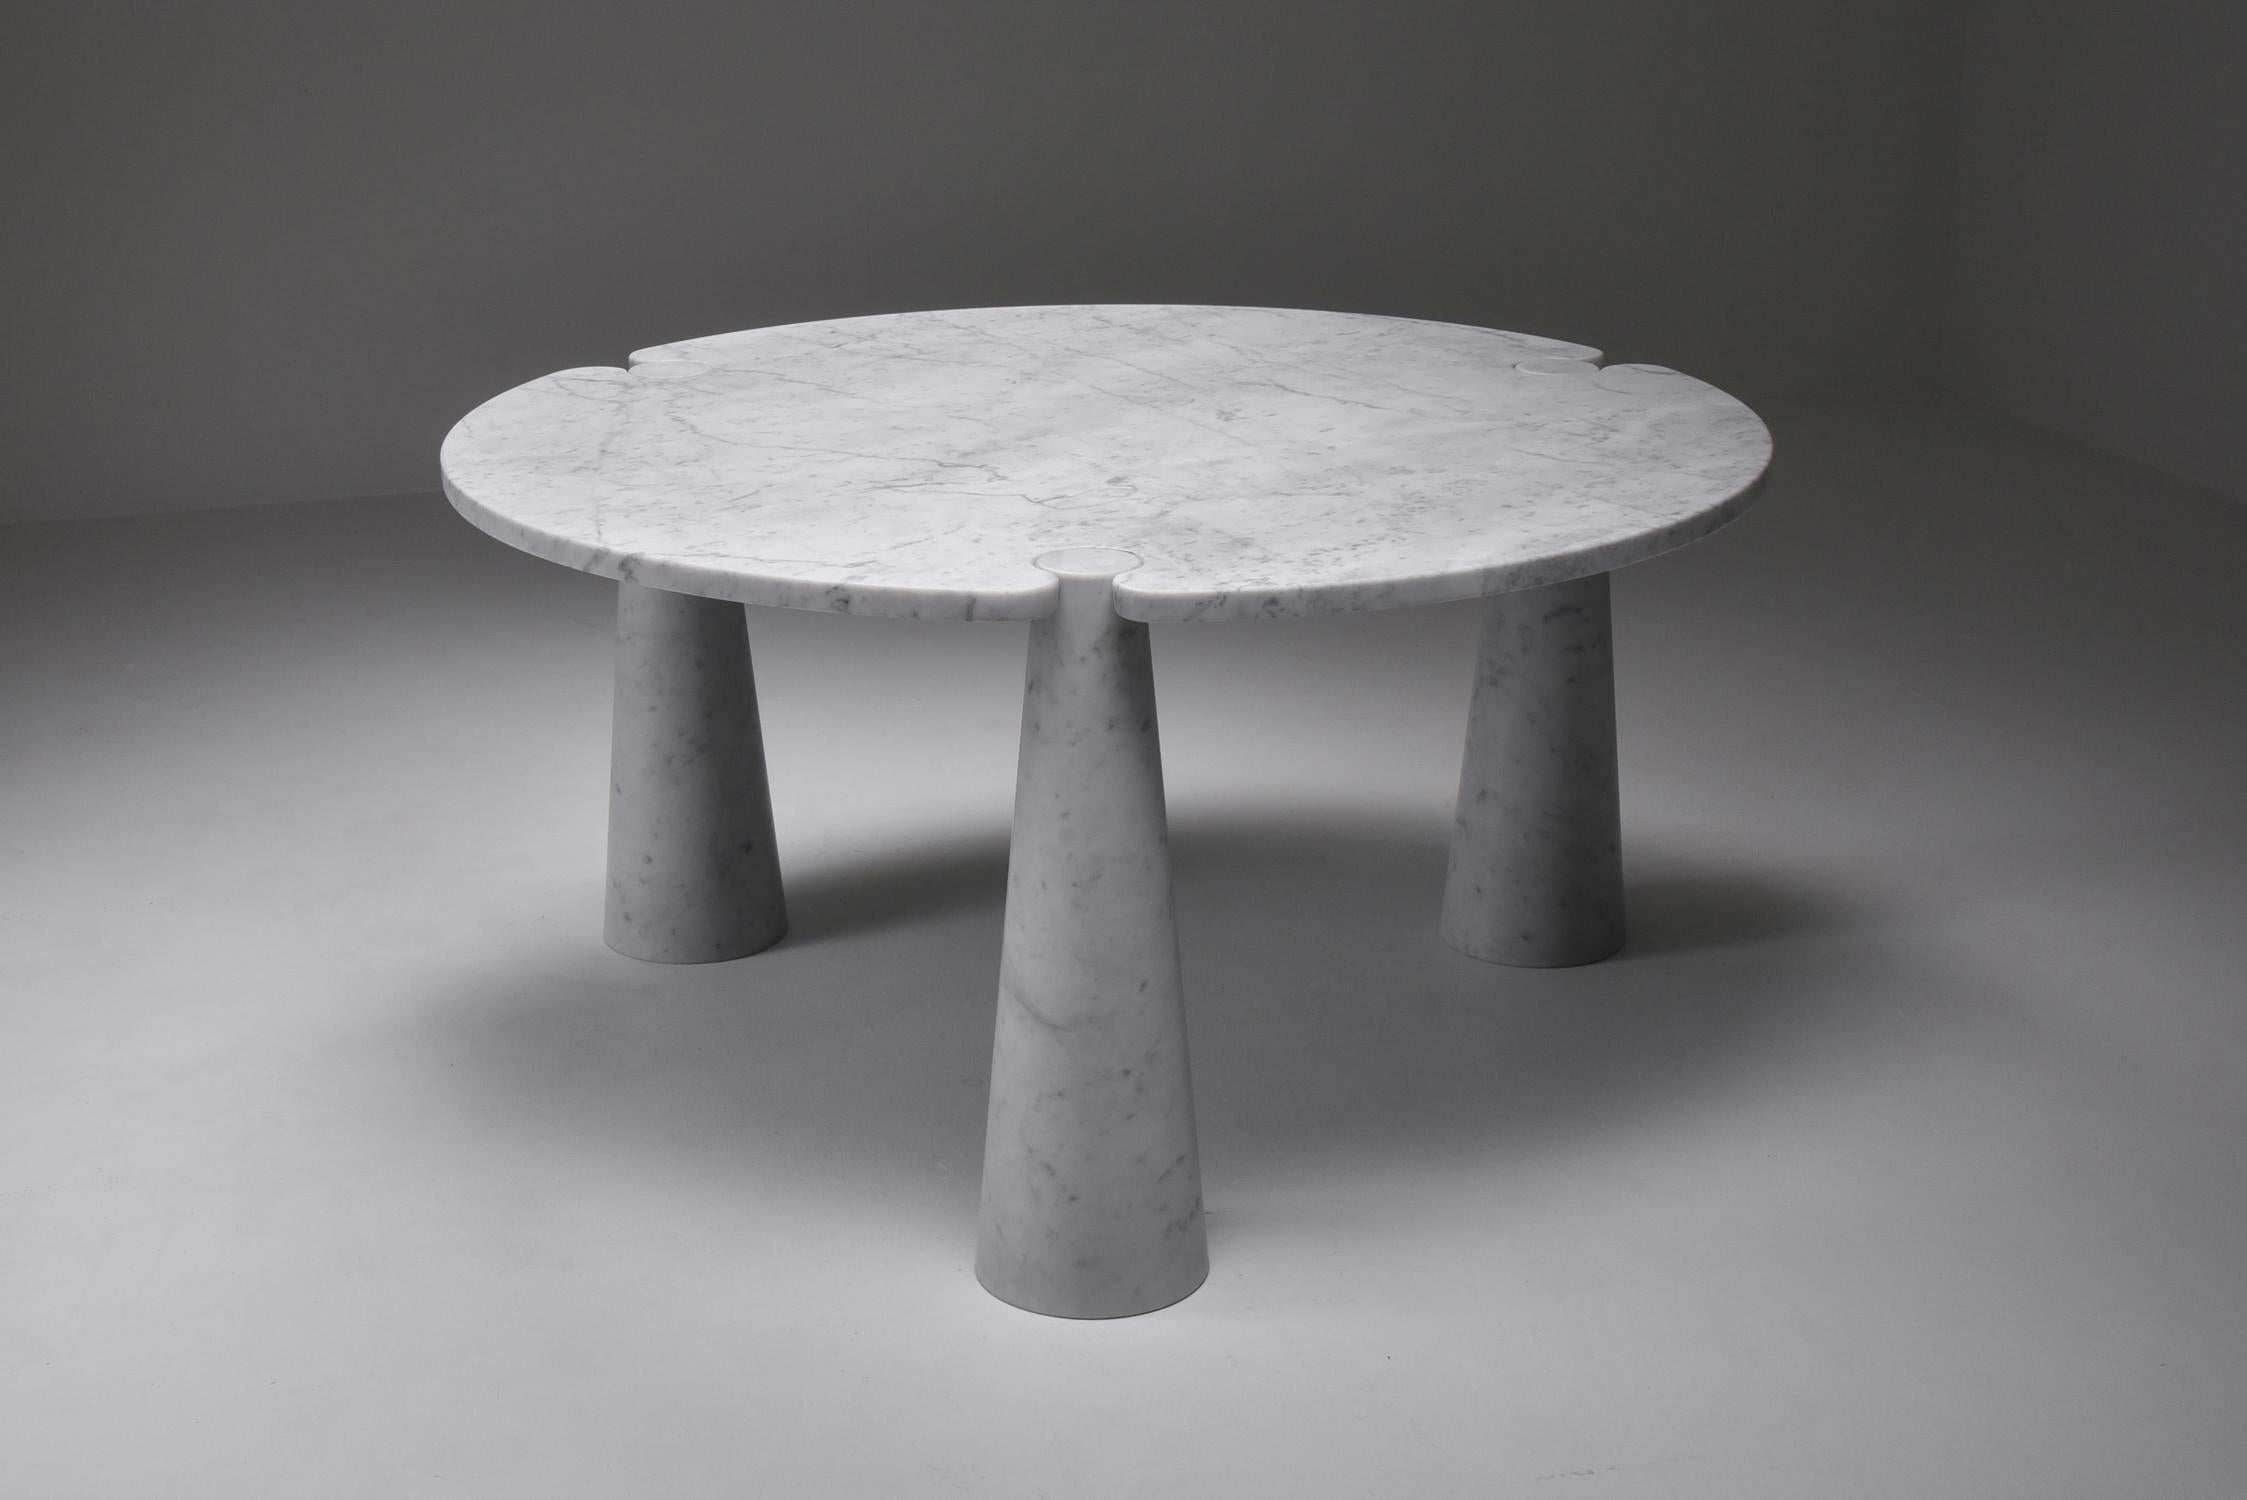 Angelo Mangiarotti, Esstisch 'Eros', rund, weißer Marmor, 1970er Jahre 

Dieser skulpturale Tisch von Angelo Mangiarotti ist ein gekonntes Beispiel für postmodernes Design. Der Tisch ist in weißem Marmor ausgeführt. Die ovale Tischplatte ist fugen-